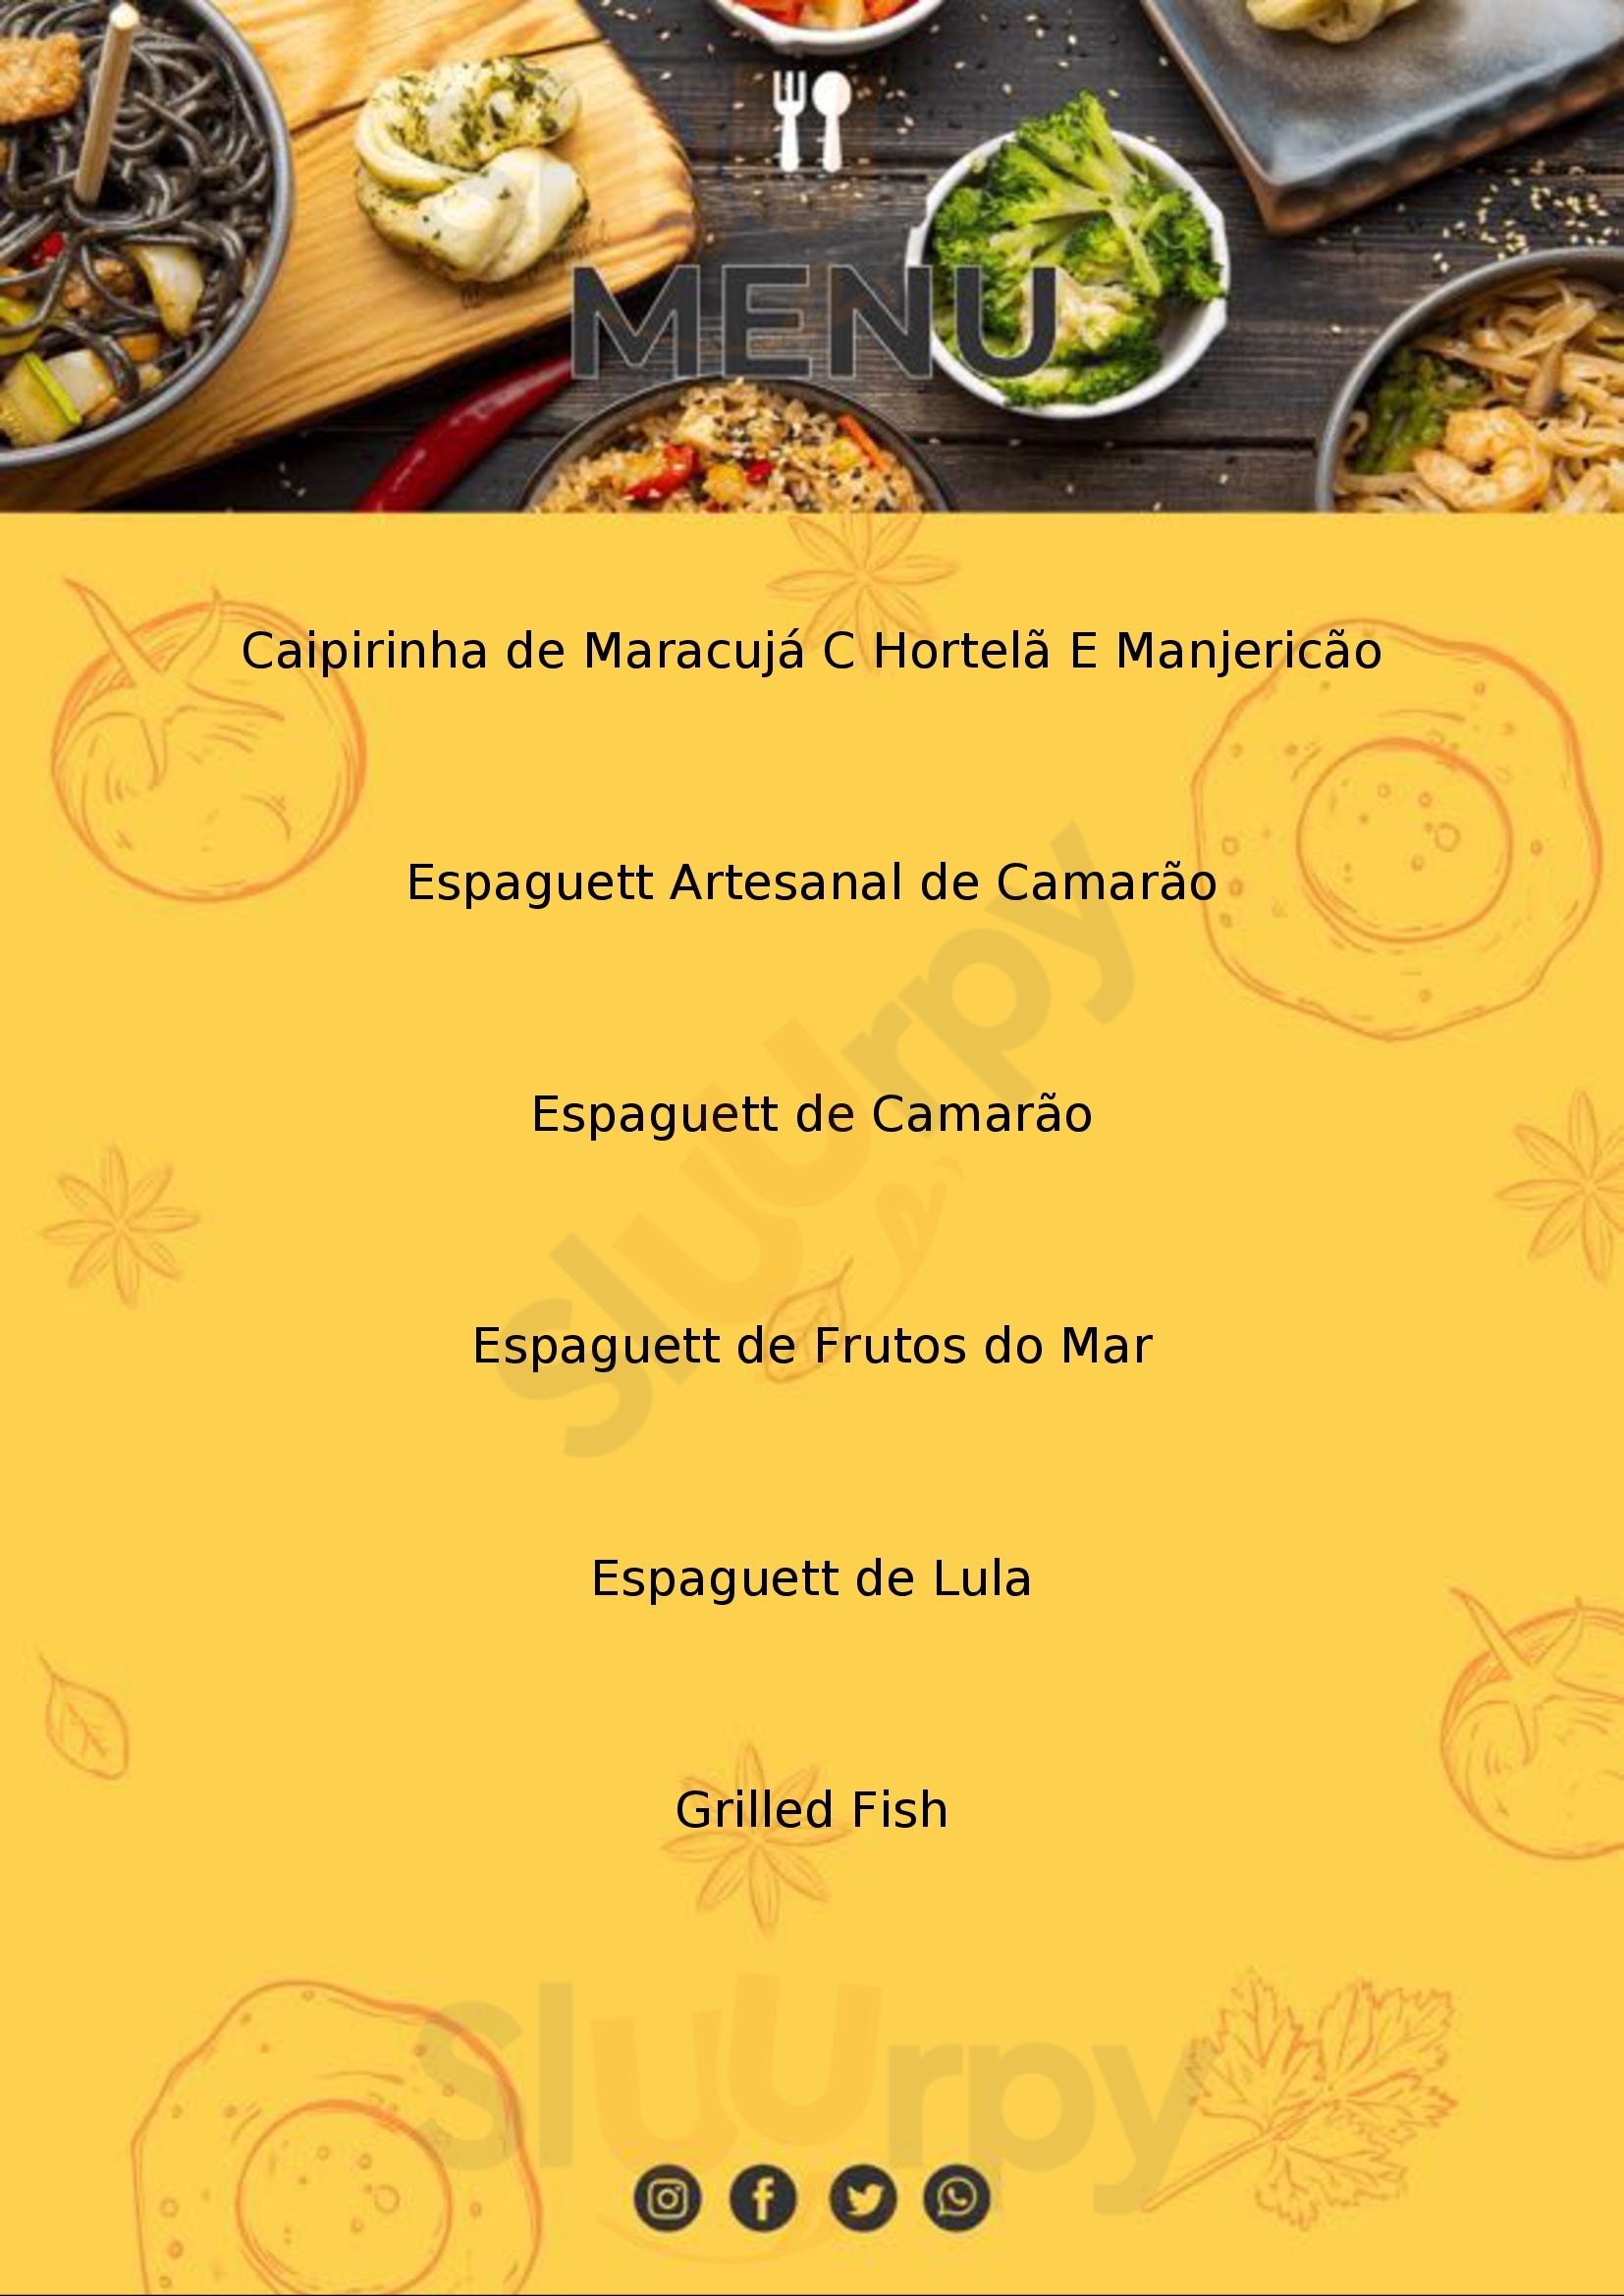 Sea Food Restaurante Angra dos Reis Menu - 1